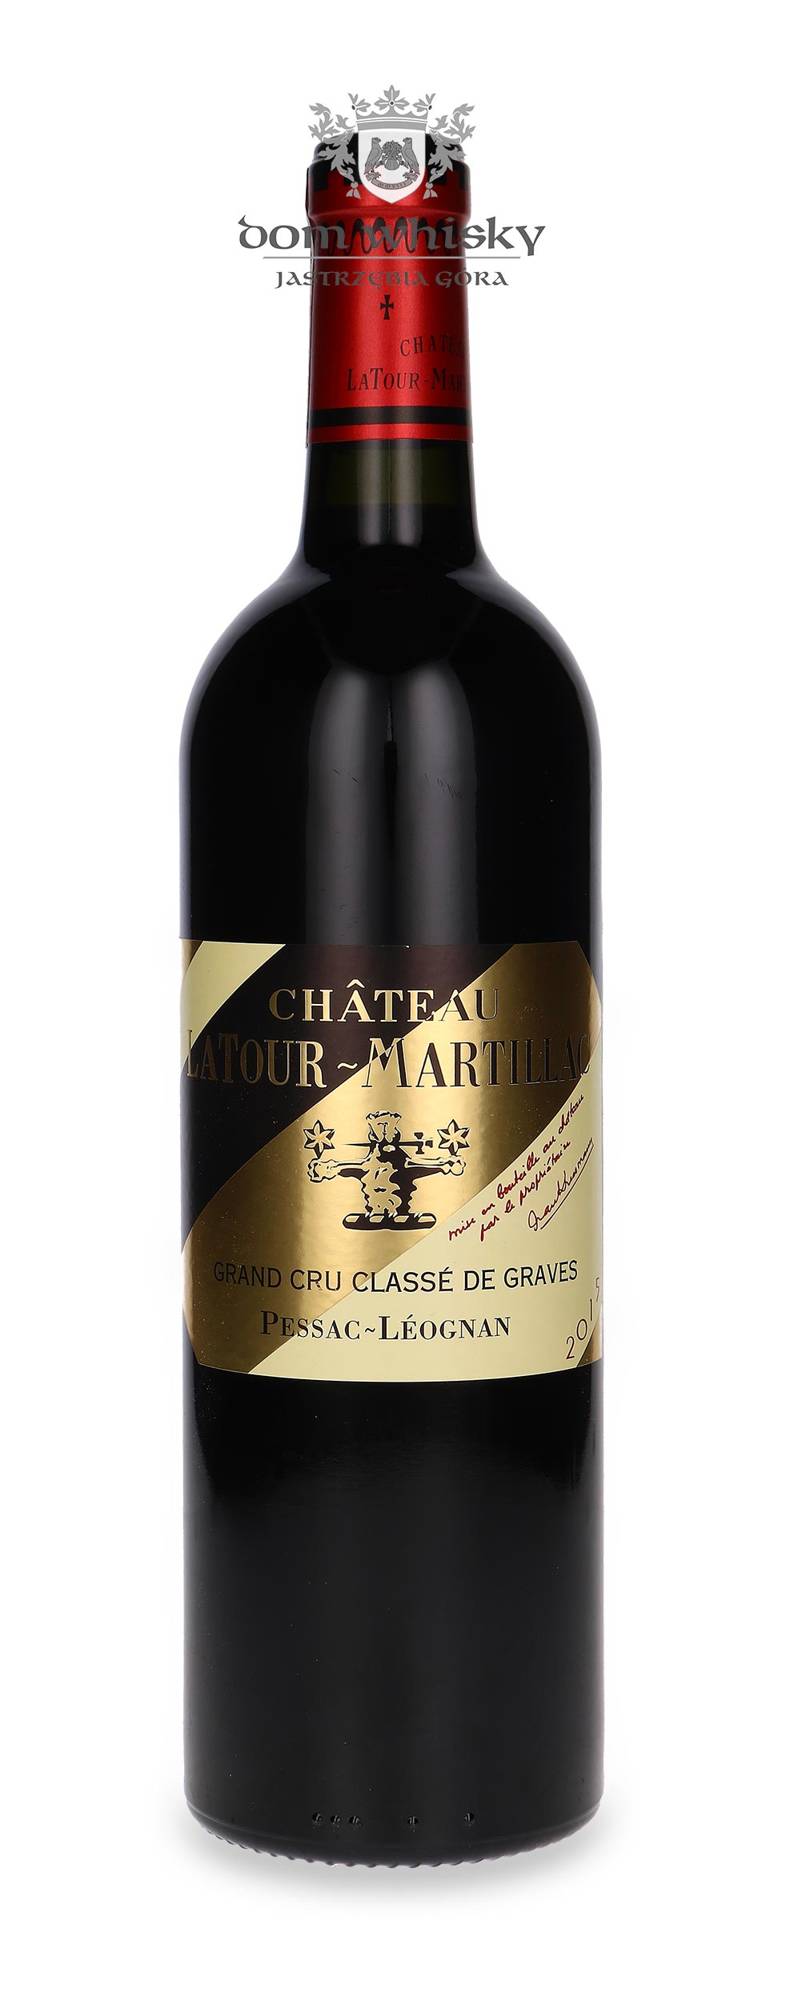 Whisky Dom 0,75l Grand de Château /14%/ Latour-Martillac Pessac-Léognan Graves 2015 Cru Classé Rouge |